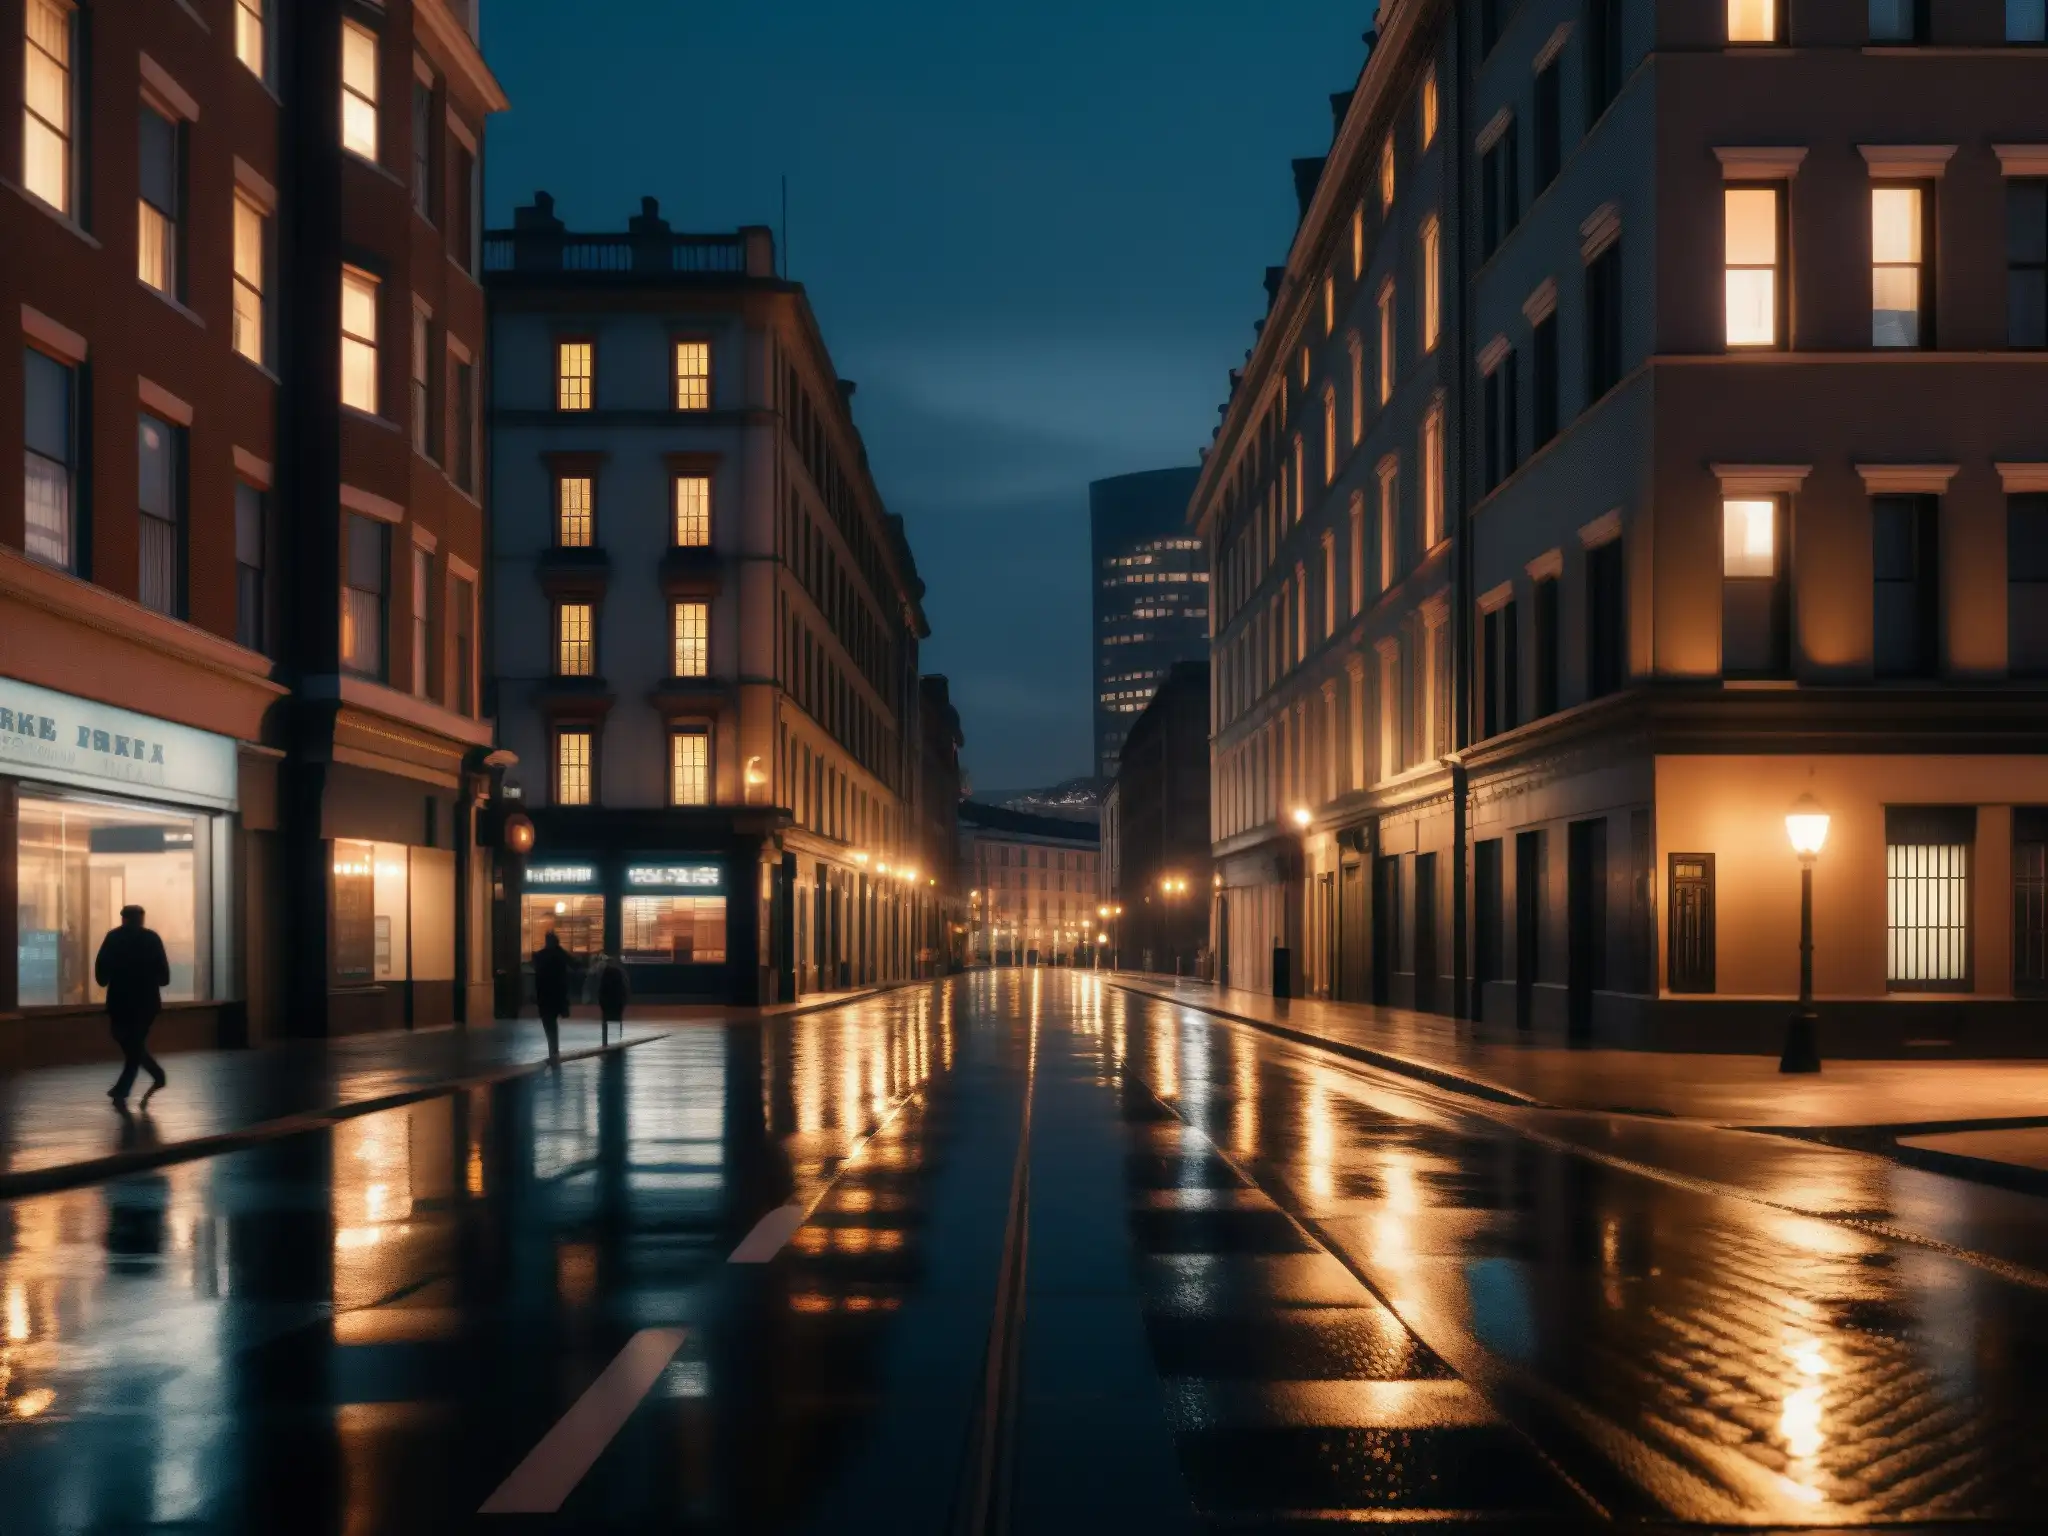 Impacto de leyendas urbanas en la seguridad: Noche en la ciudad, edificios tenues y personas distantes, creando una atmósfera misteriosa y cautelosa